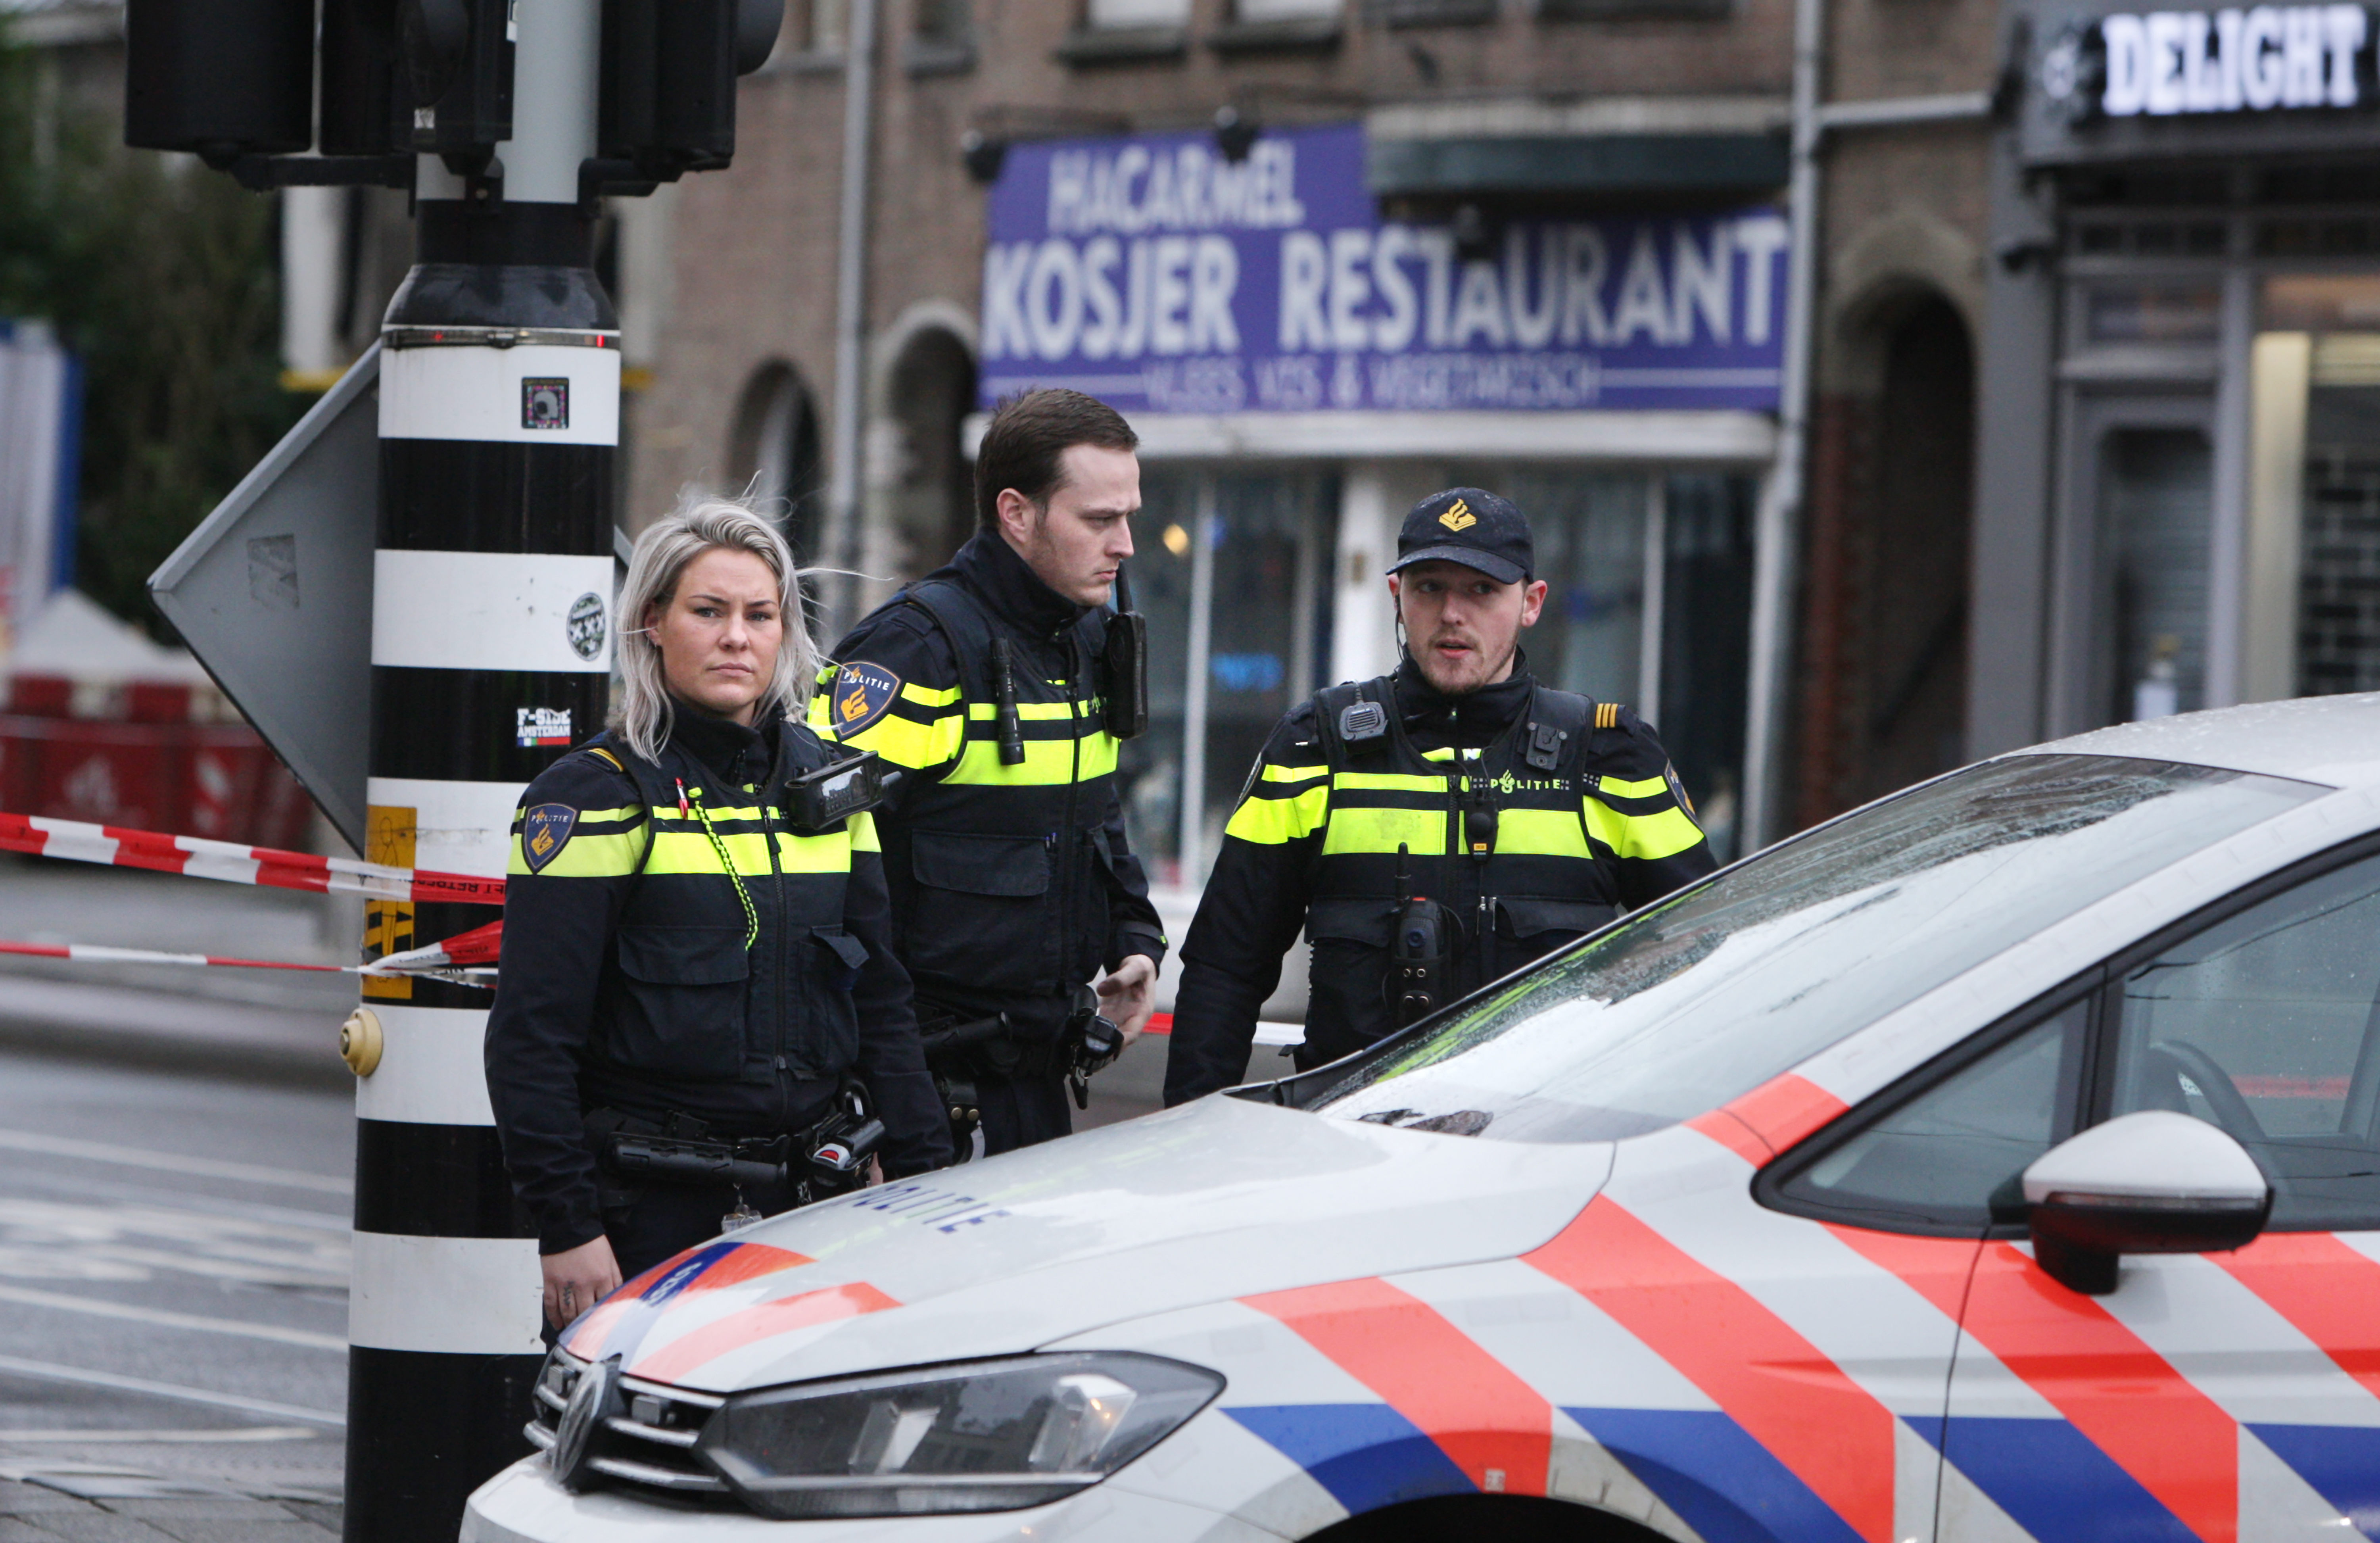 Взрывы случились утром 12 февраля в Амстердаме и Керкраде, никто не пострадал Фото: © Global Look Press / Paulo Amorim / Vwpics